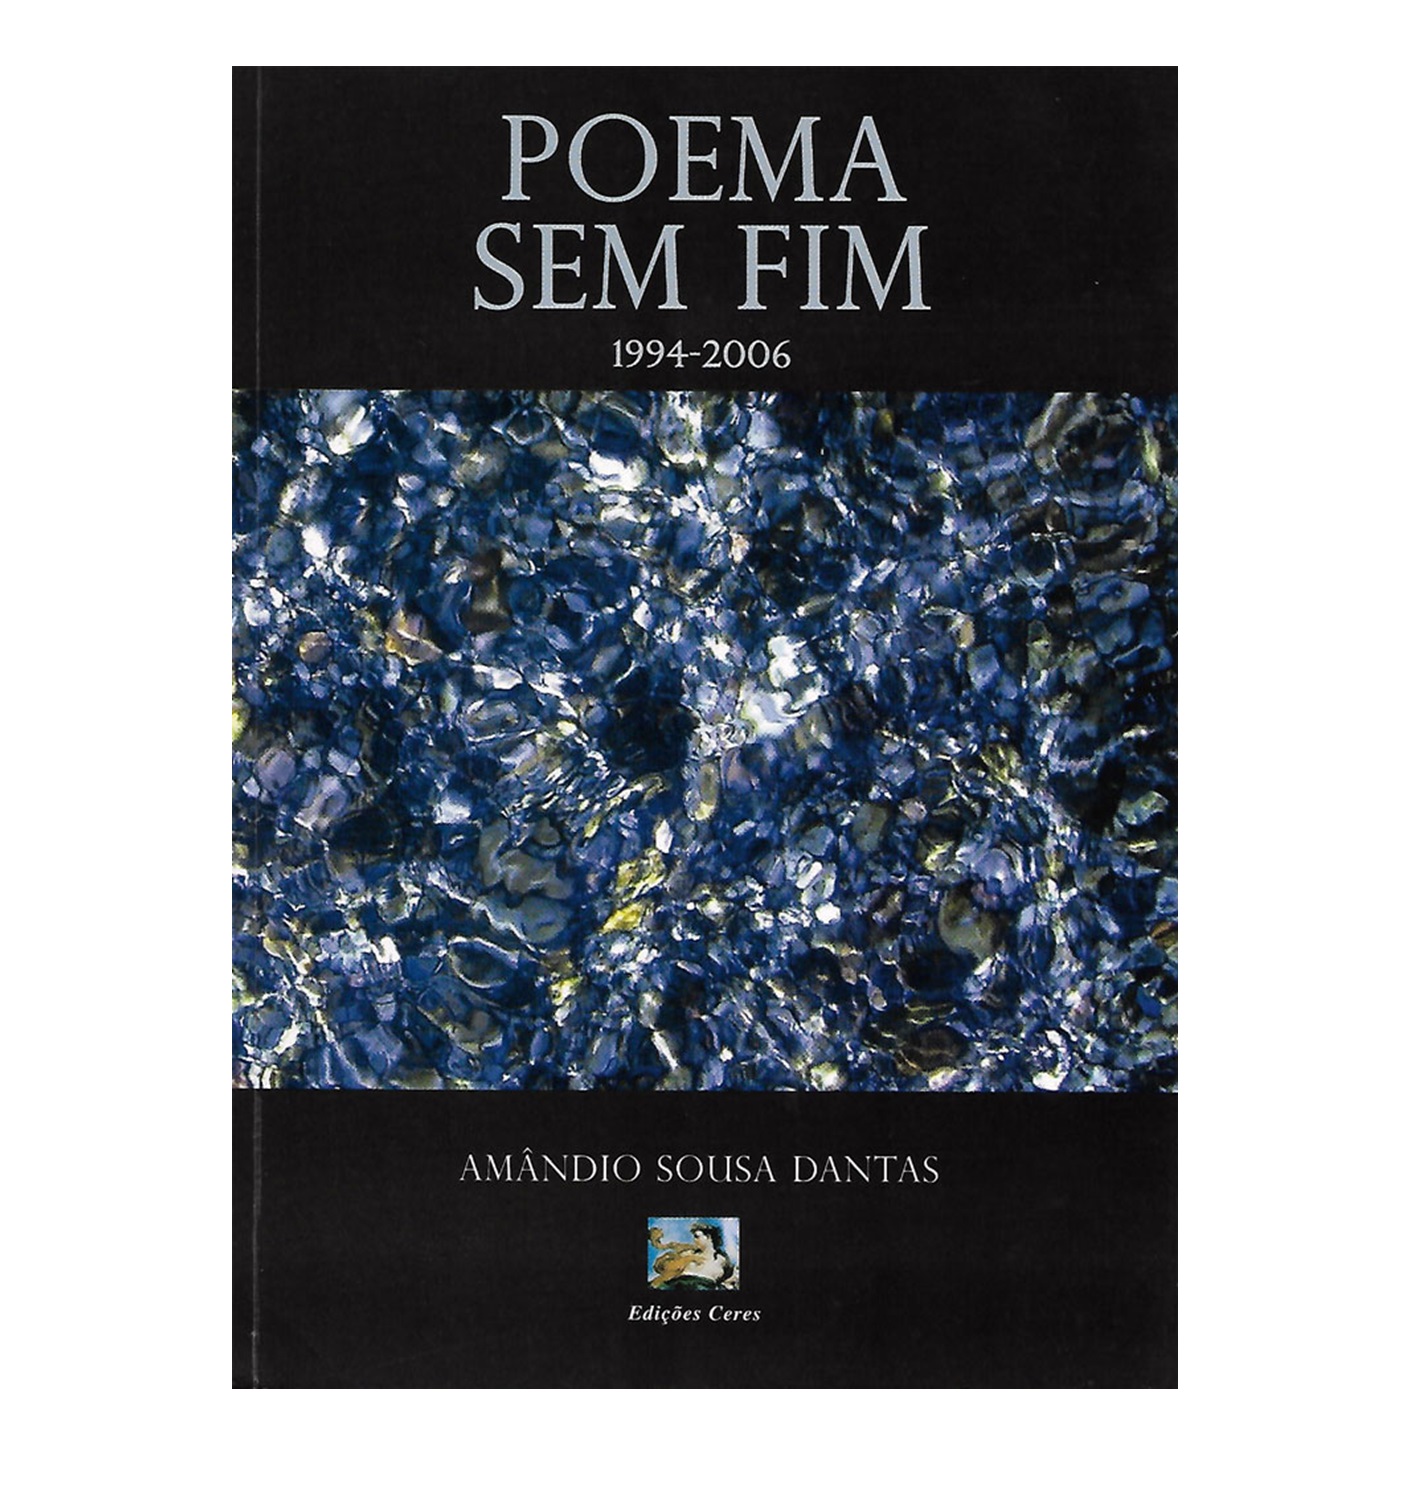 POEMA SEM FIM (1994-2006)